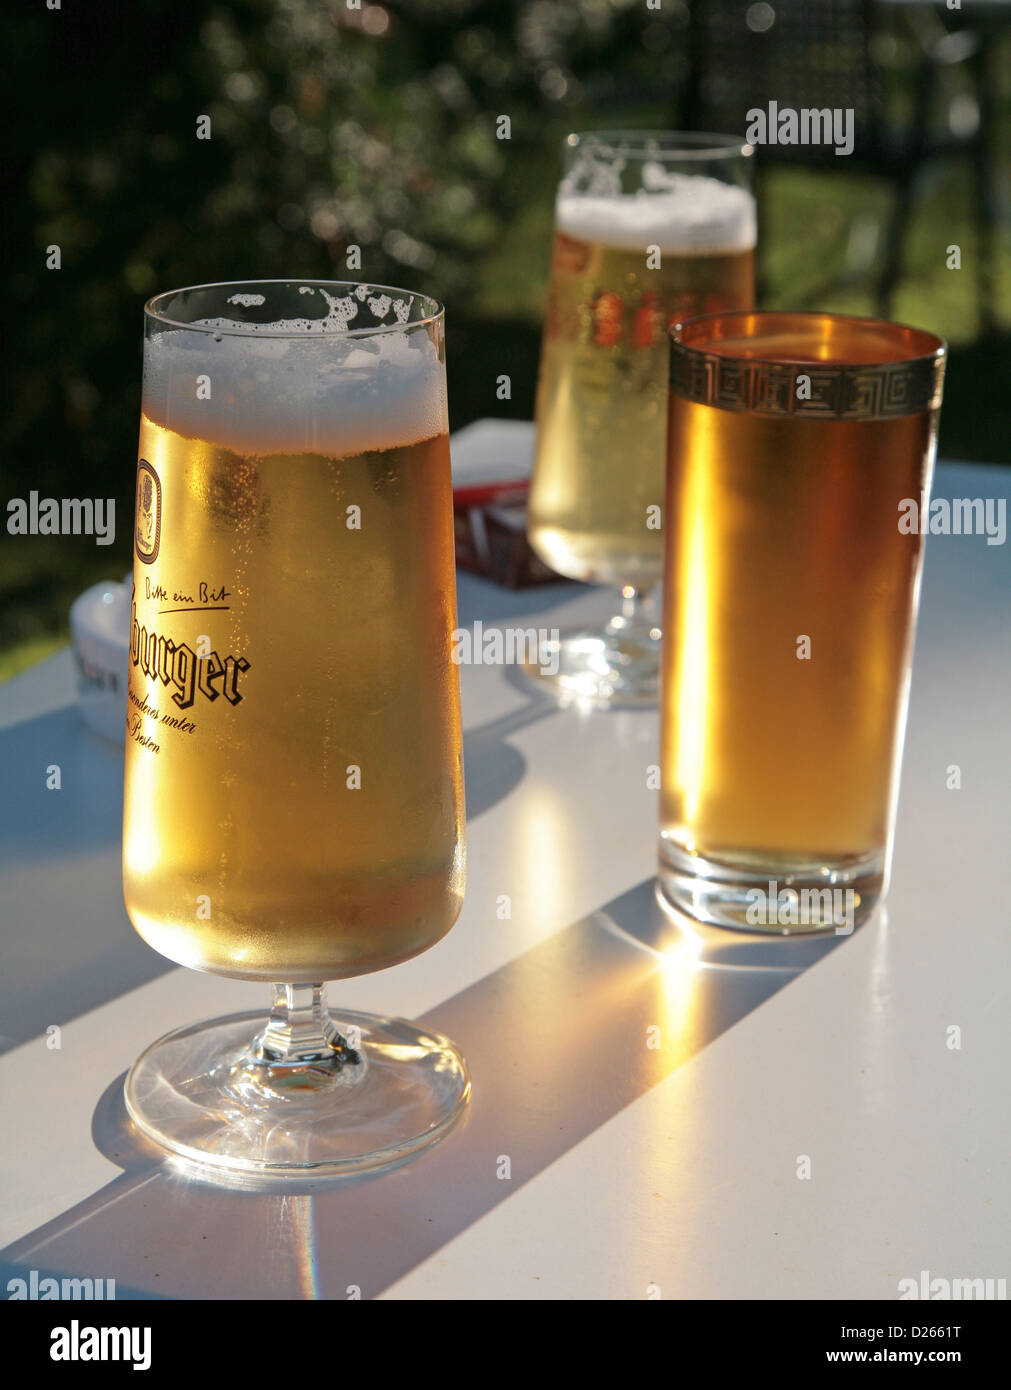 Hamburg, Deutschland, ein Bier, Alster und Apfelsaft Stockfotografie - Alamy